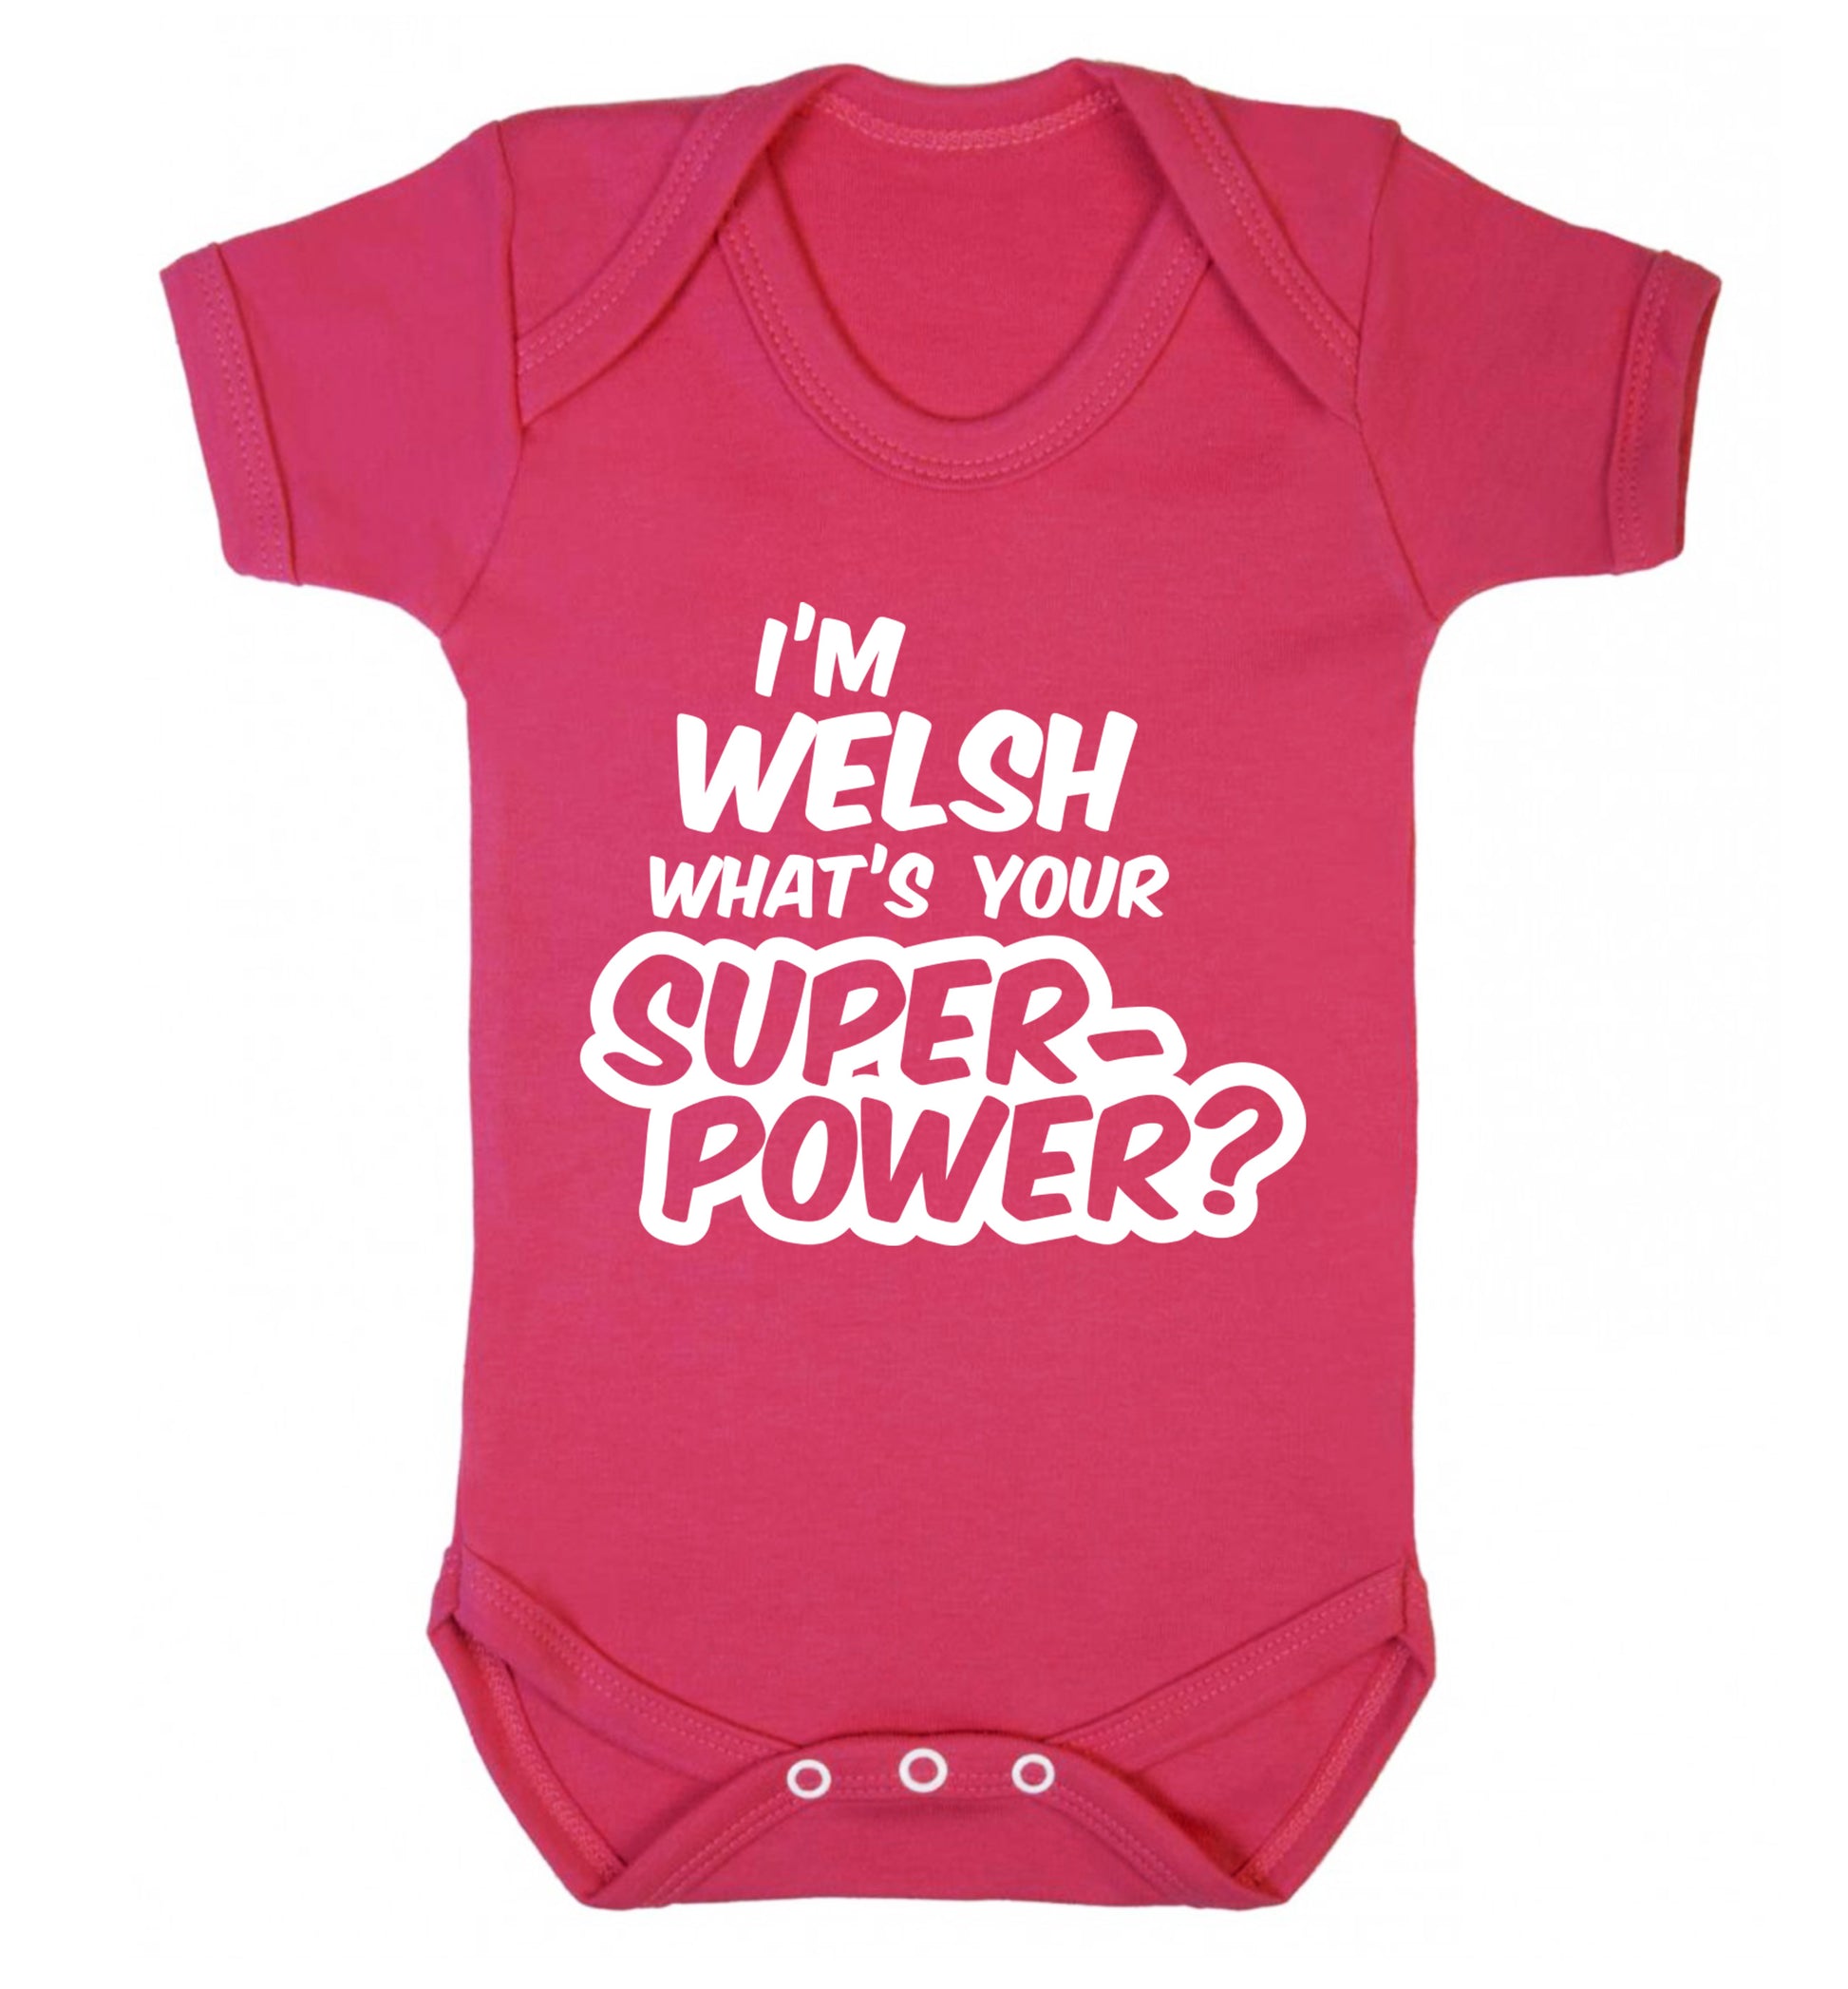 I'm Welsh what's your superpower? Baby Vest dark pink 18-24 months